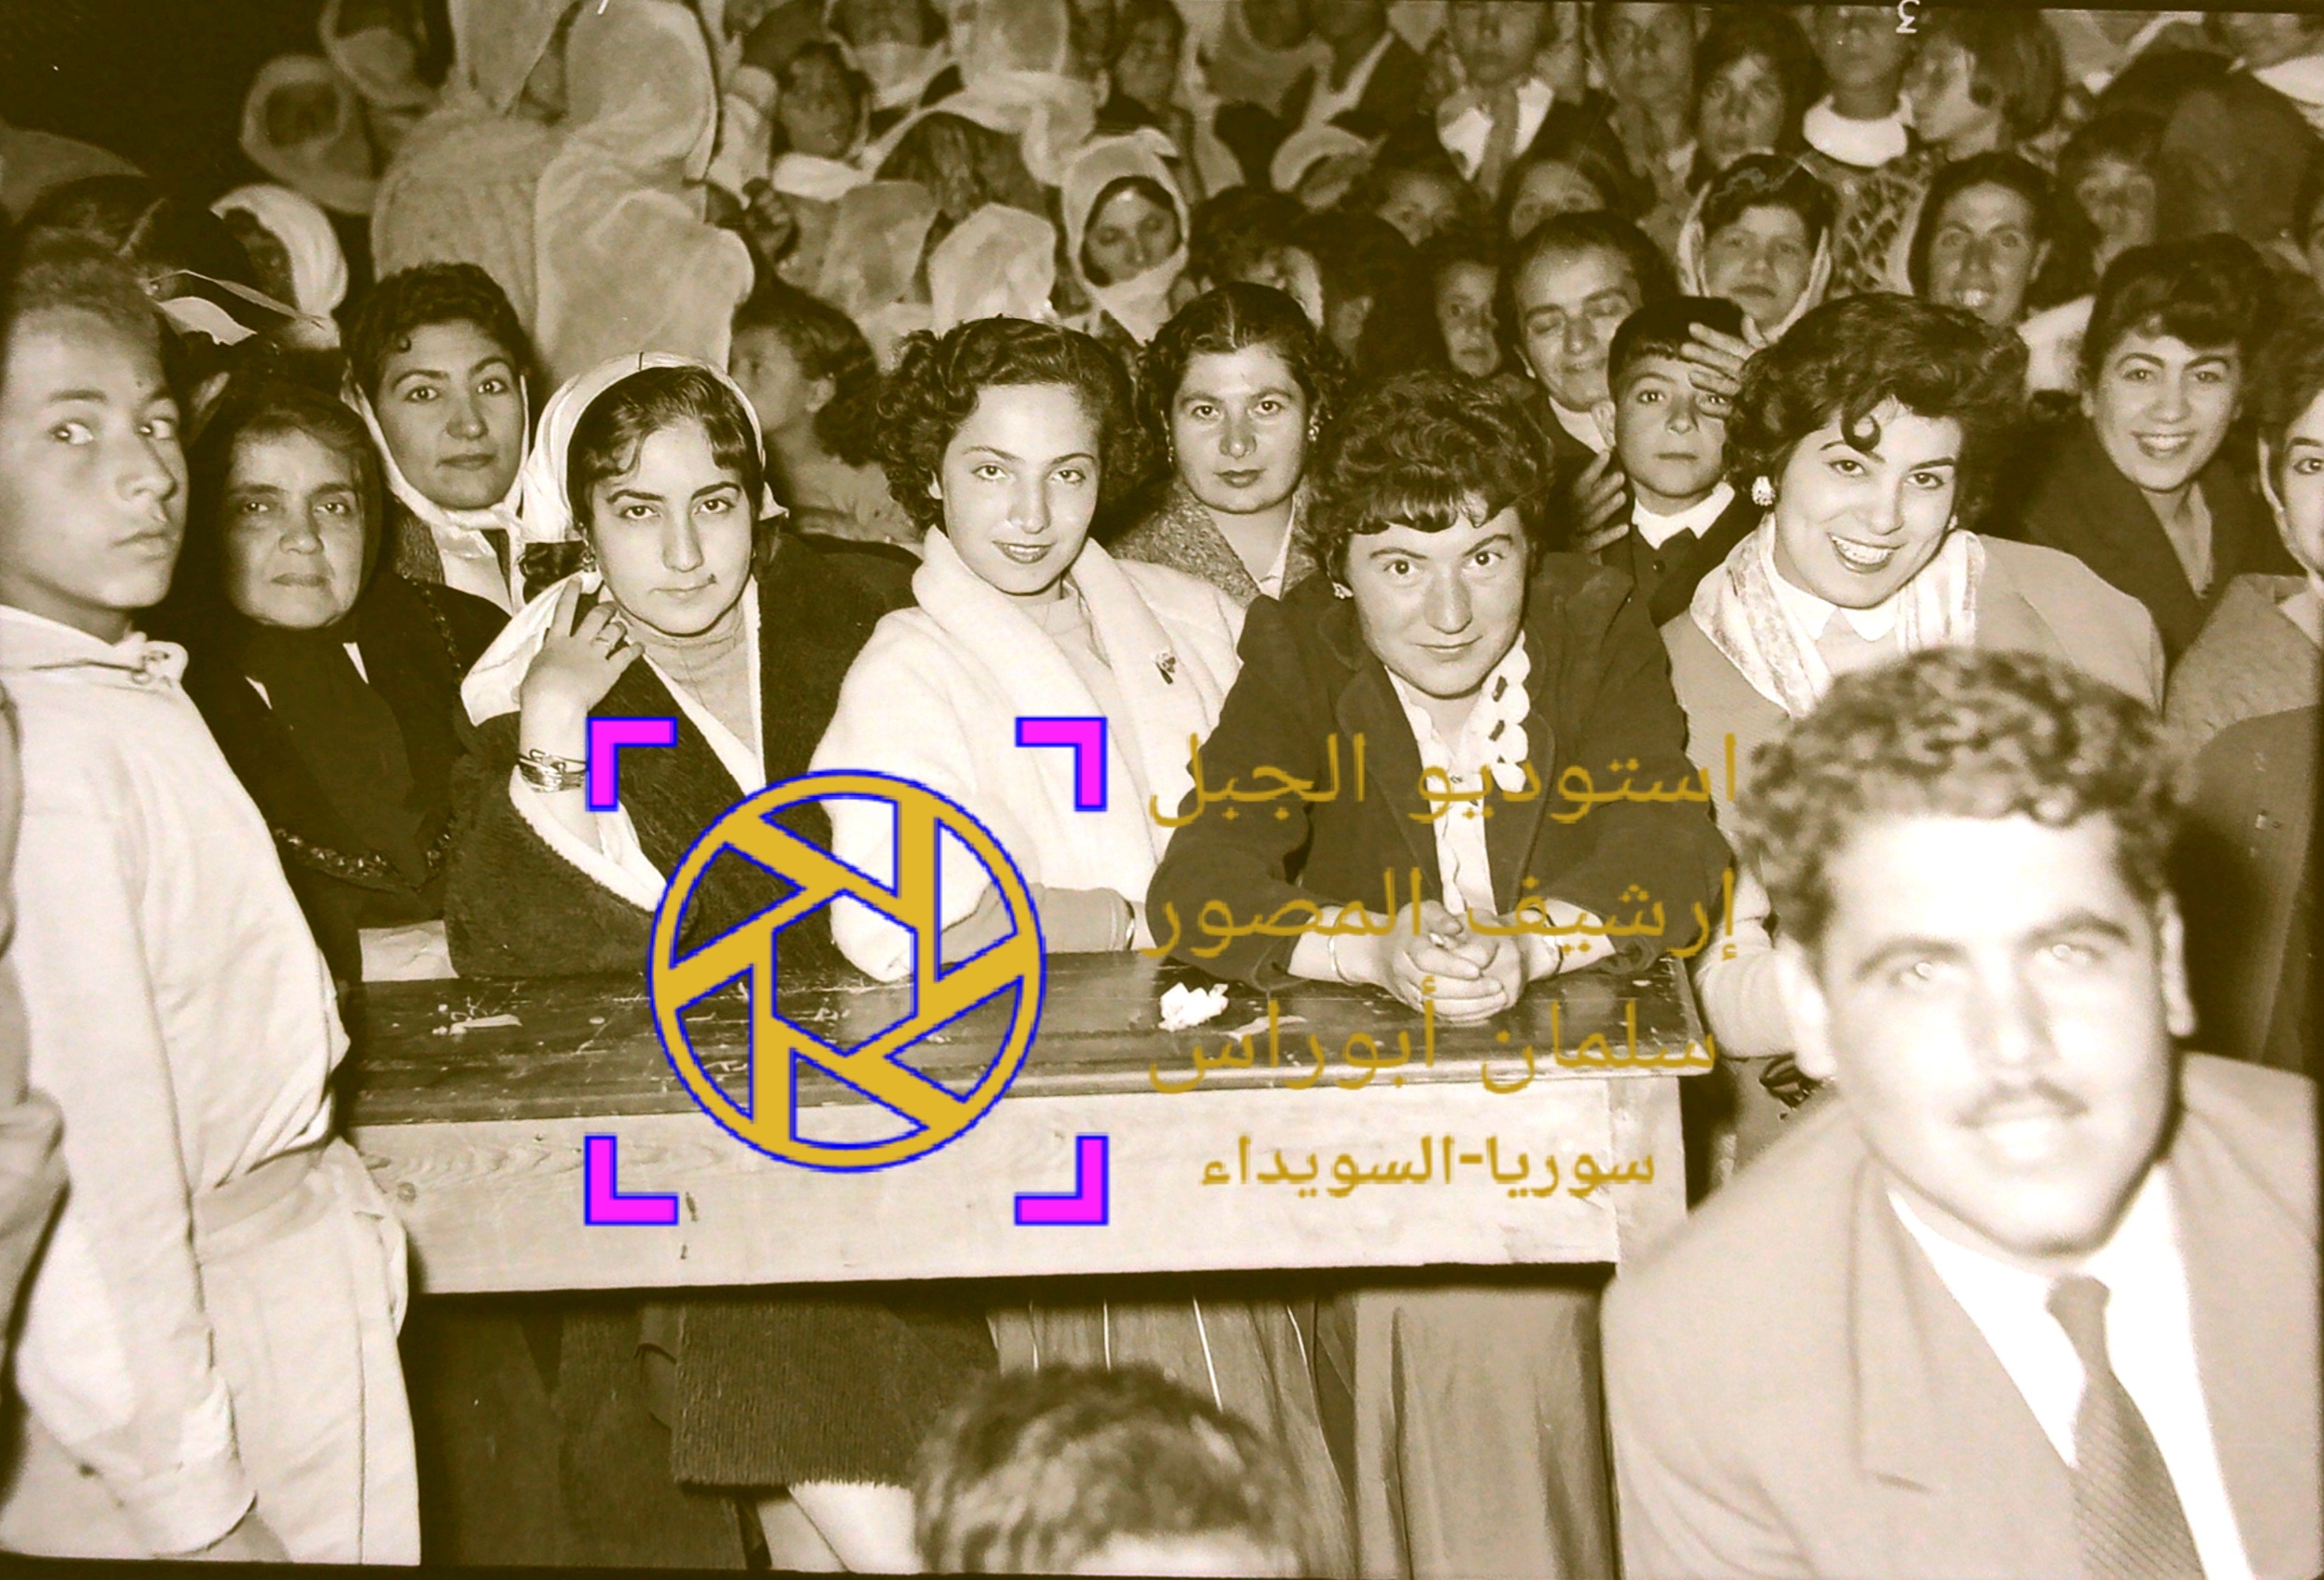 التاريخ السوري المعاصر - معلمات مدرسة الزهراء في احتفال لمديرية المعارف في السويداء عام 1957